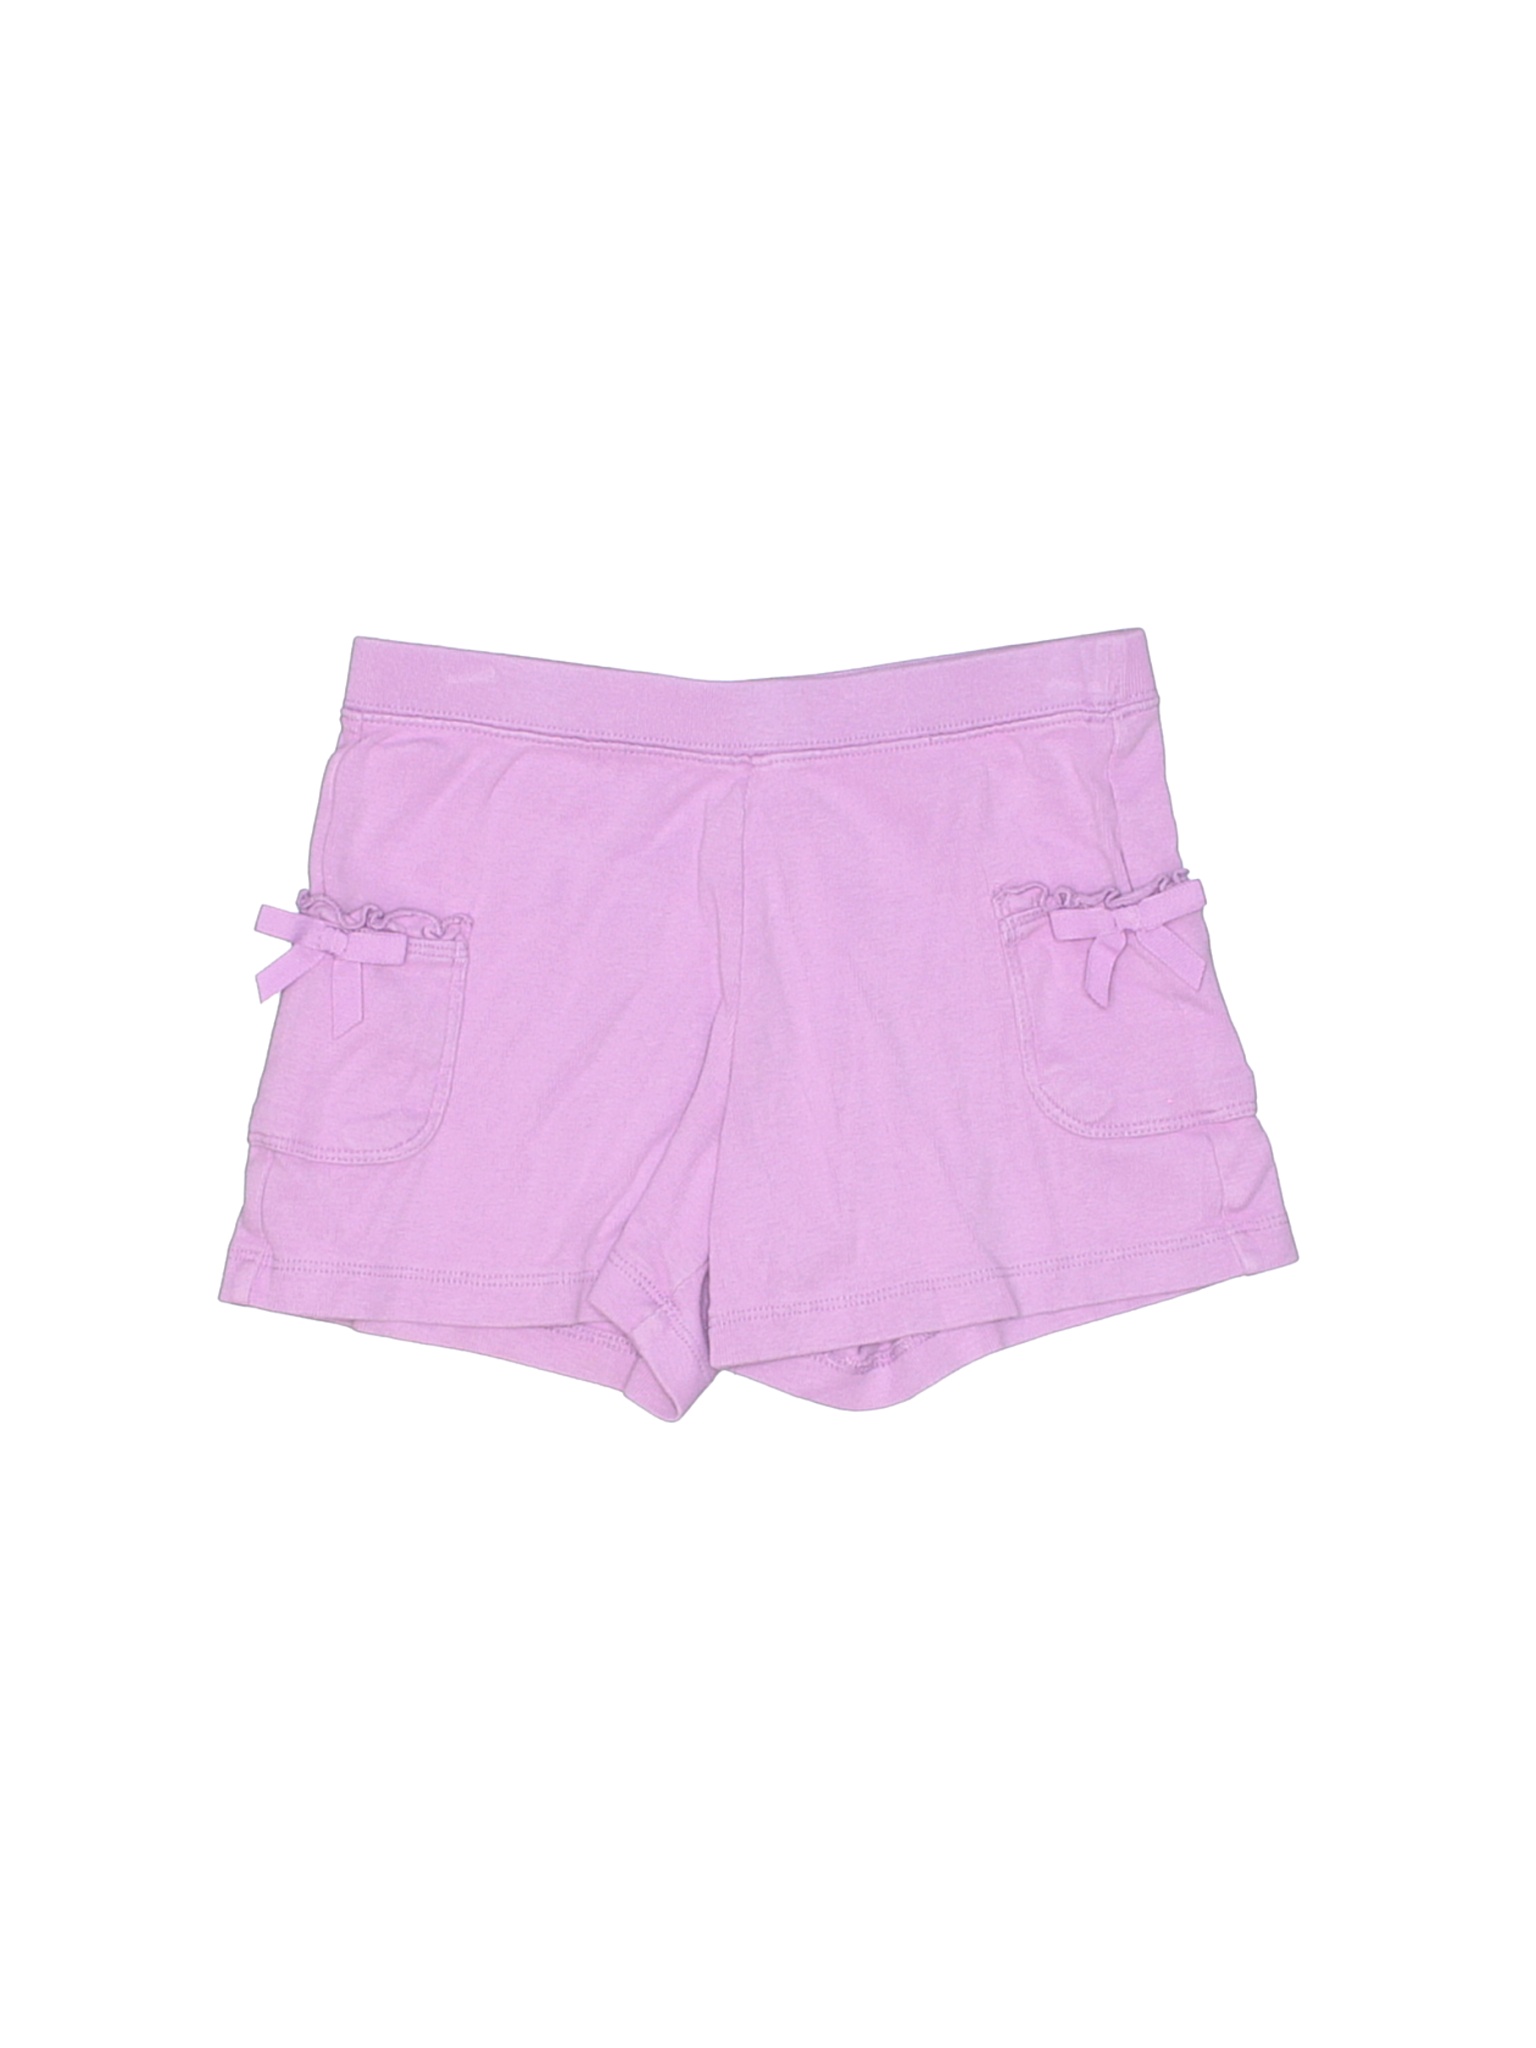 Gymboree Girls Purple Cargo Shorts 7 | eBay